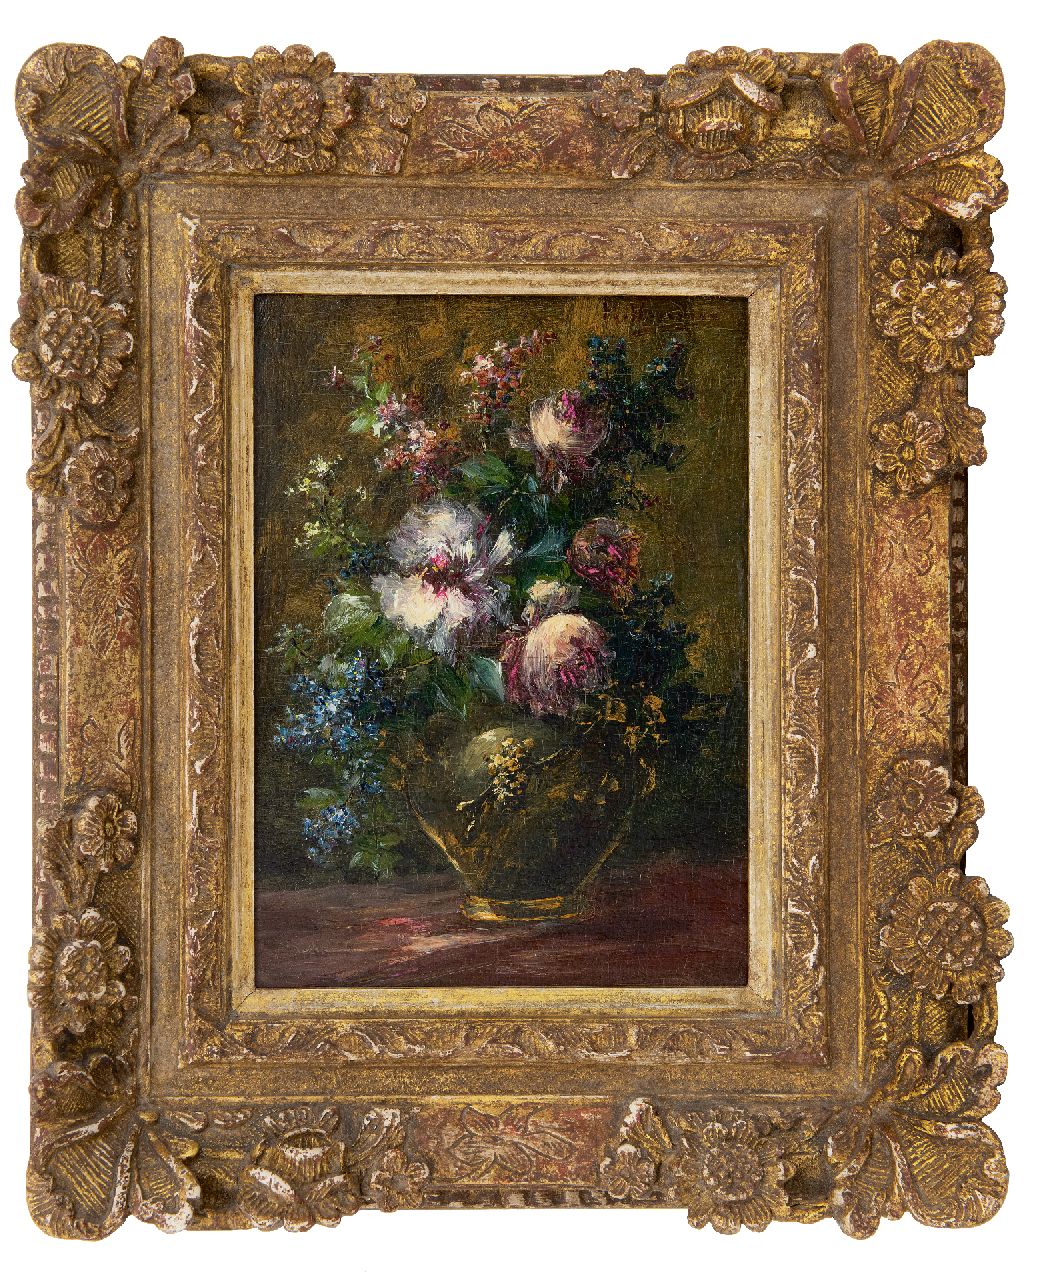 Hendrickx M.A.  | Michel Antoine Hendrickx | Schilderijen te koop aangeboden | Bloemstilleven, olieverf op paneel 23,3 x 16,8 cm, gesigneerd rechtsboven